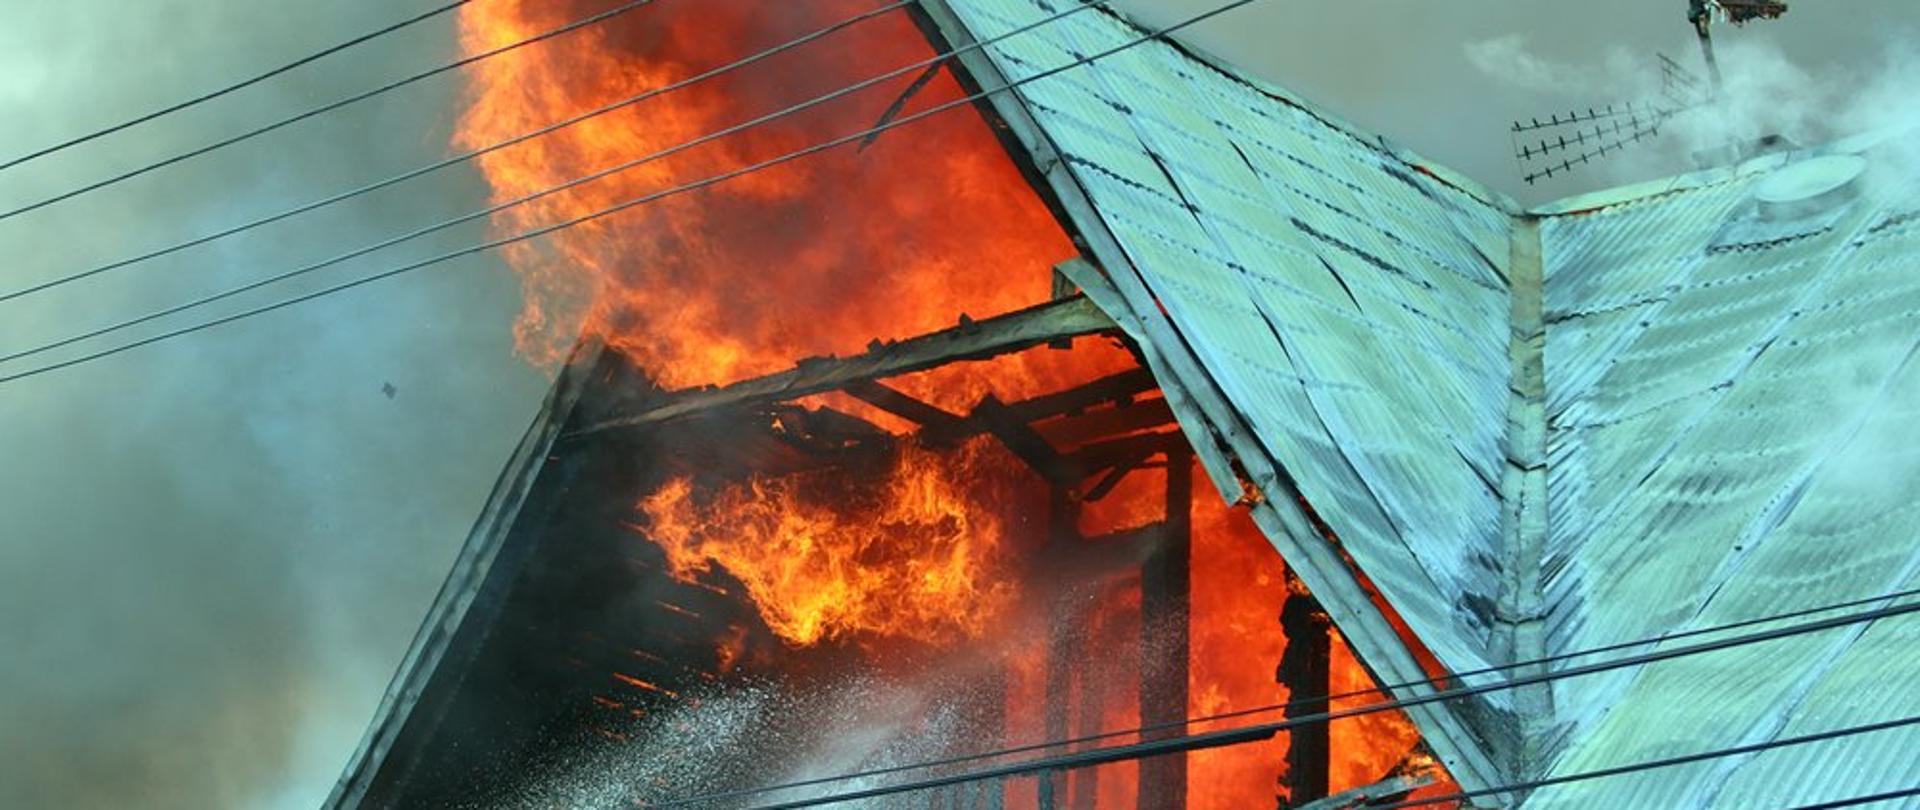 Wielki pożar w Nowej Białej na Spiszu.
Największa tragedia w Małopolsce od 30 lat.
